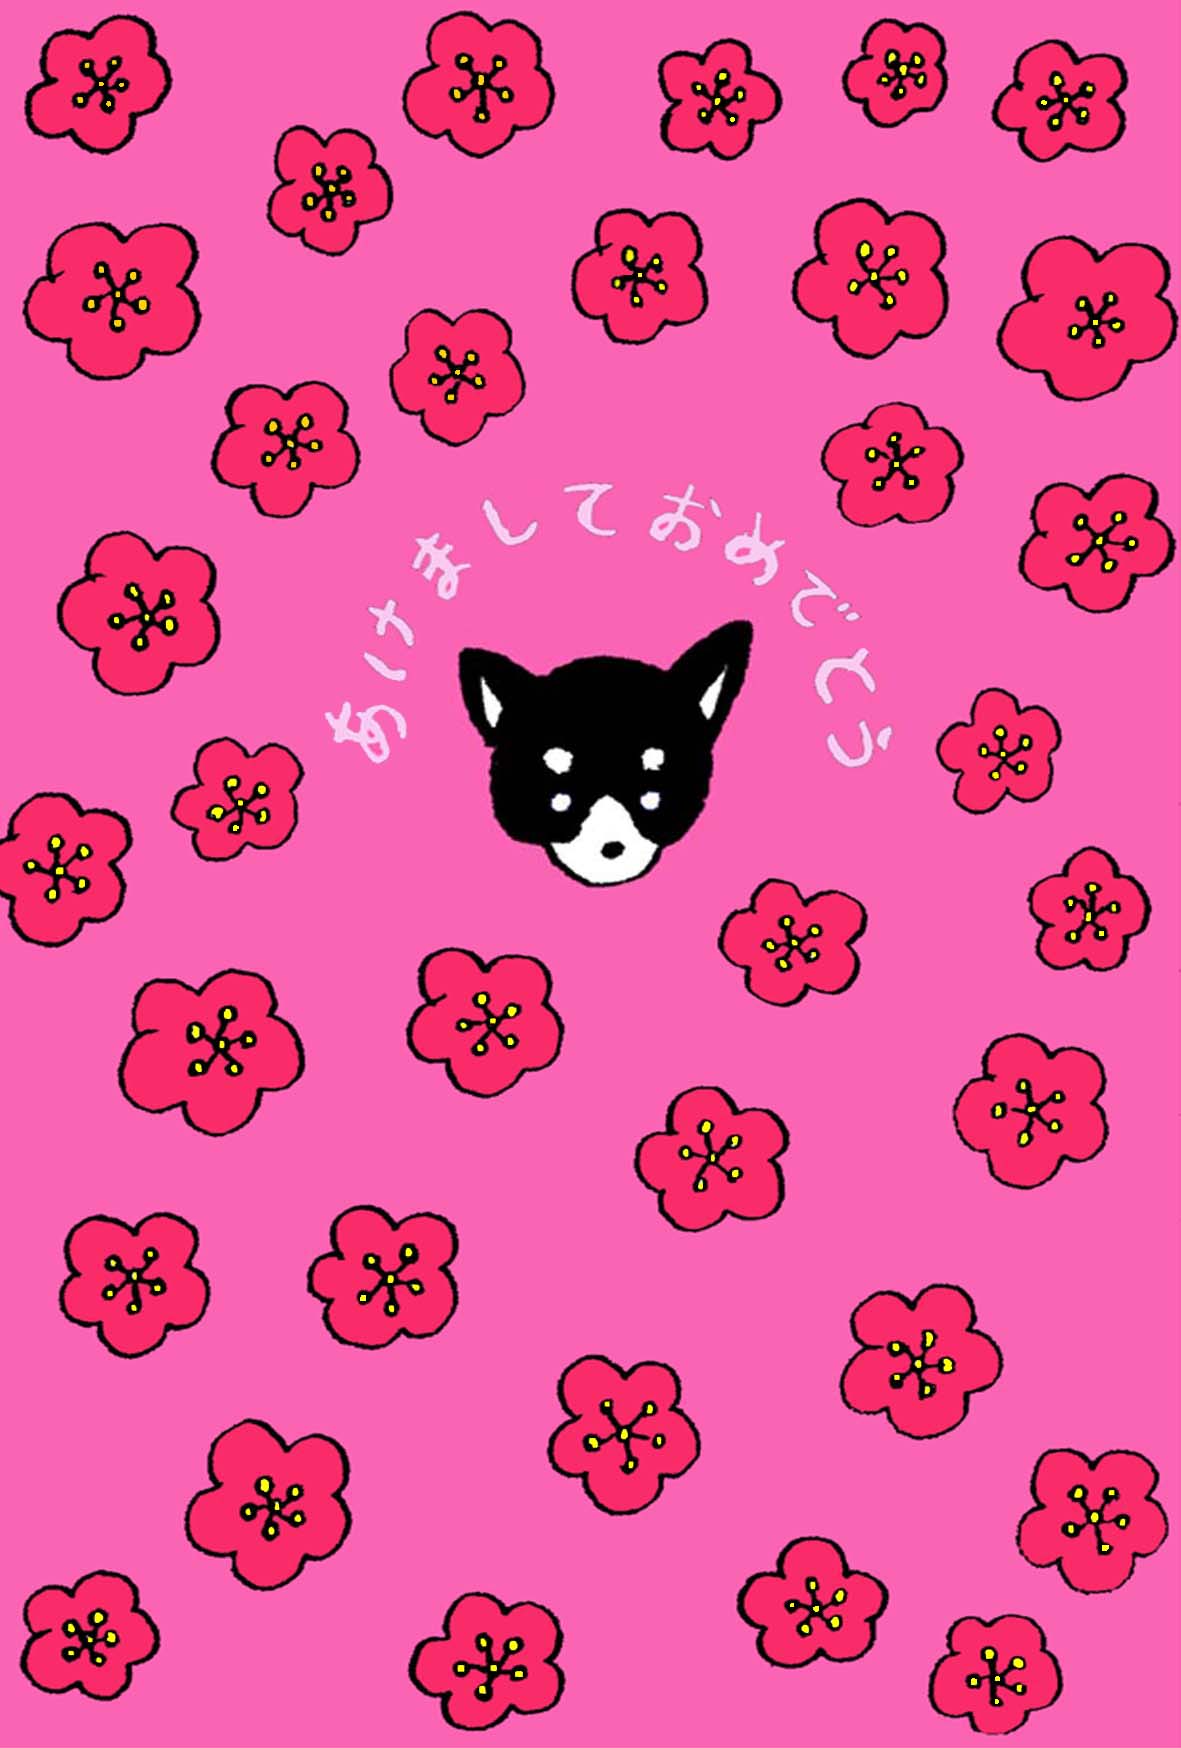 無料戌年年賀状 黒い顔のワンちゃん 梅の花ピンク系デザイン 犬